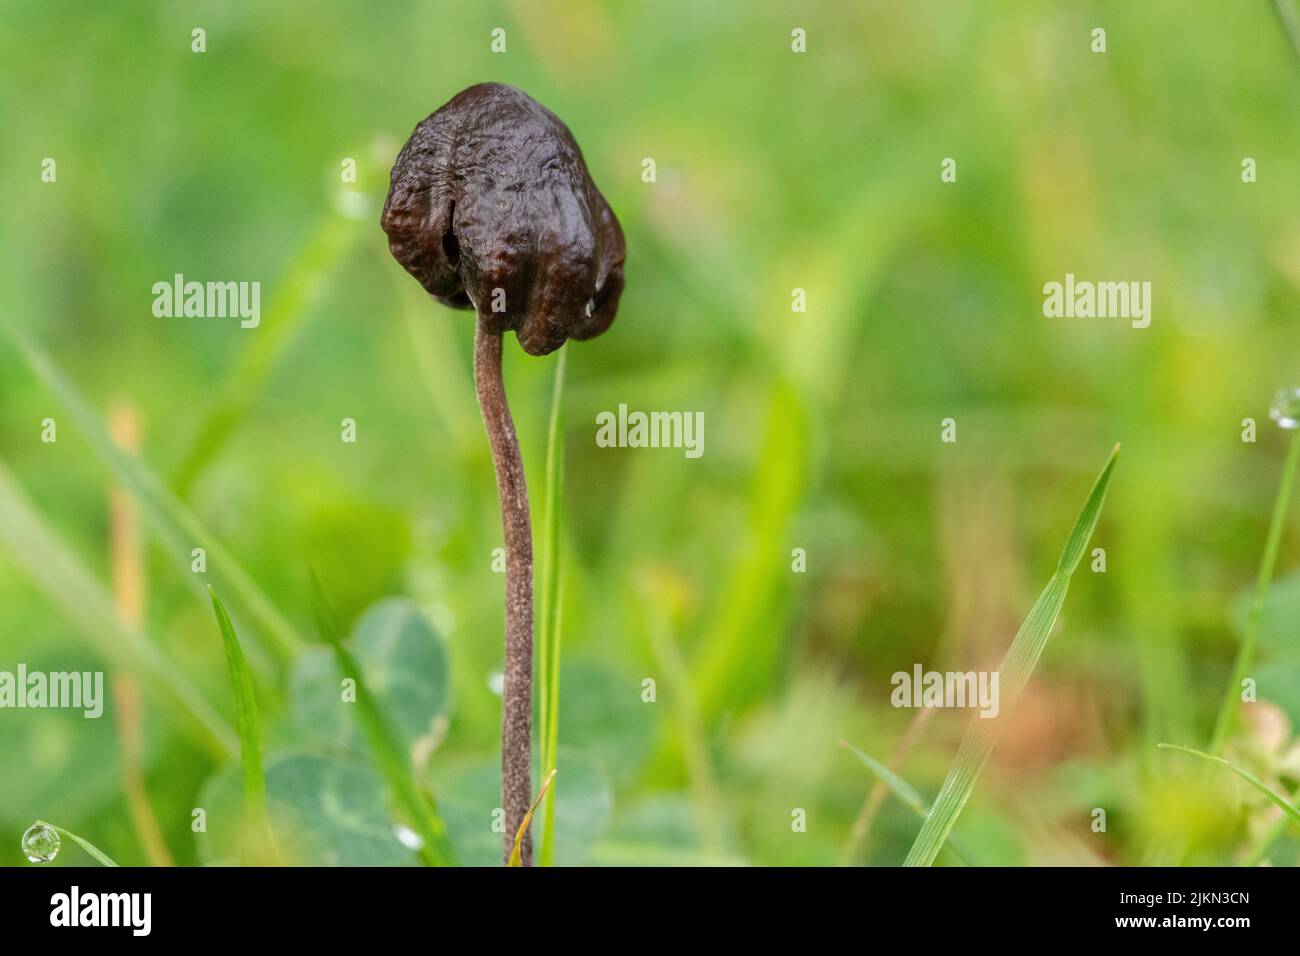 Eine Nahaufnahme eines kleinen schwarzen Pilzes, der zwischen frischem Gras wächst Stockfoto